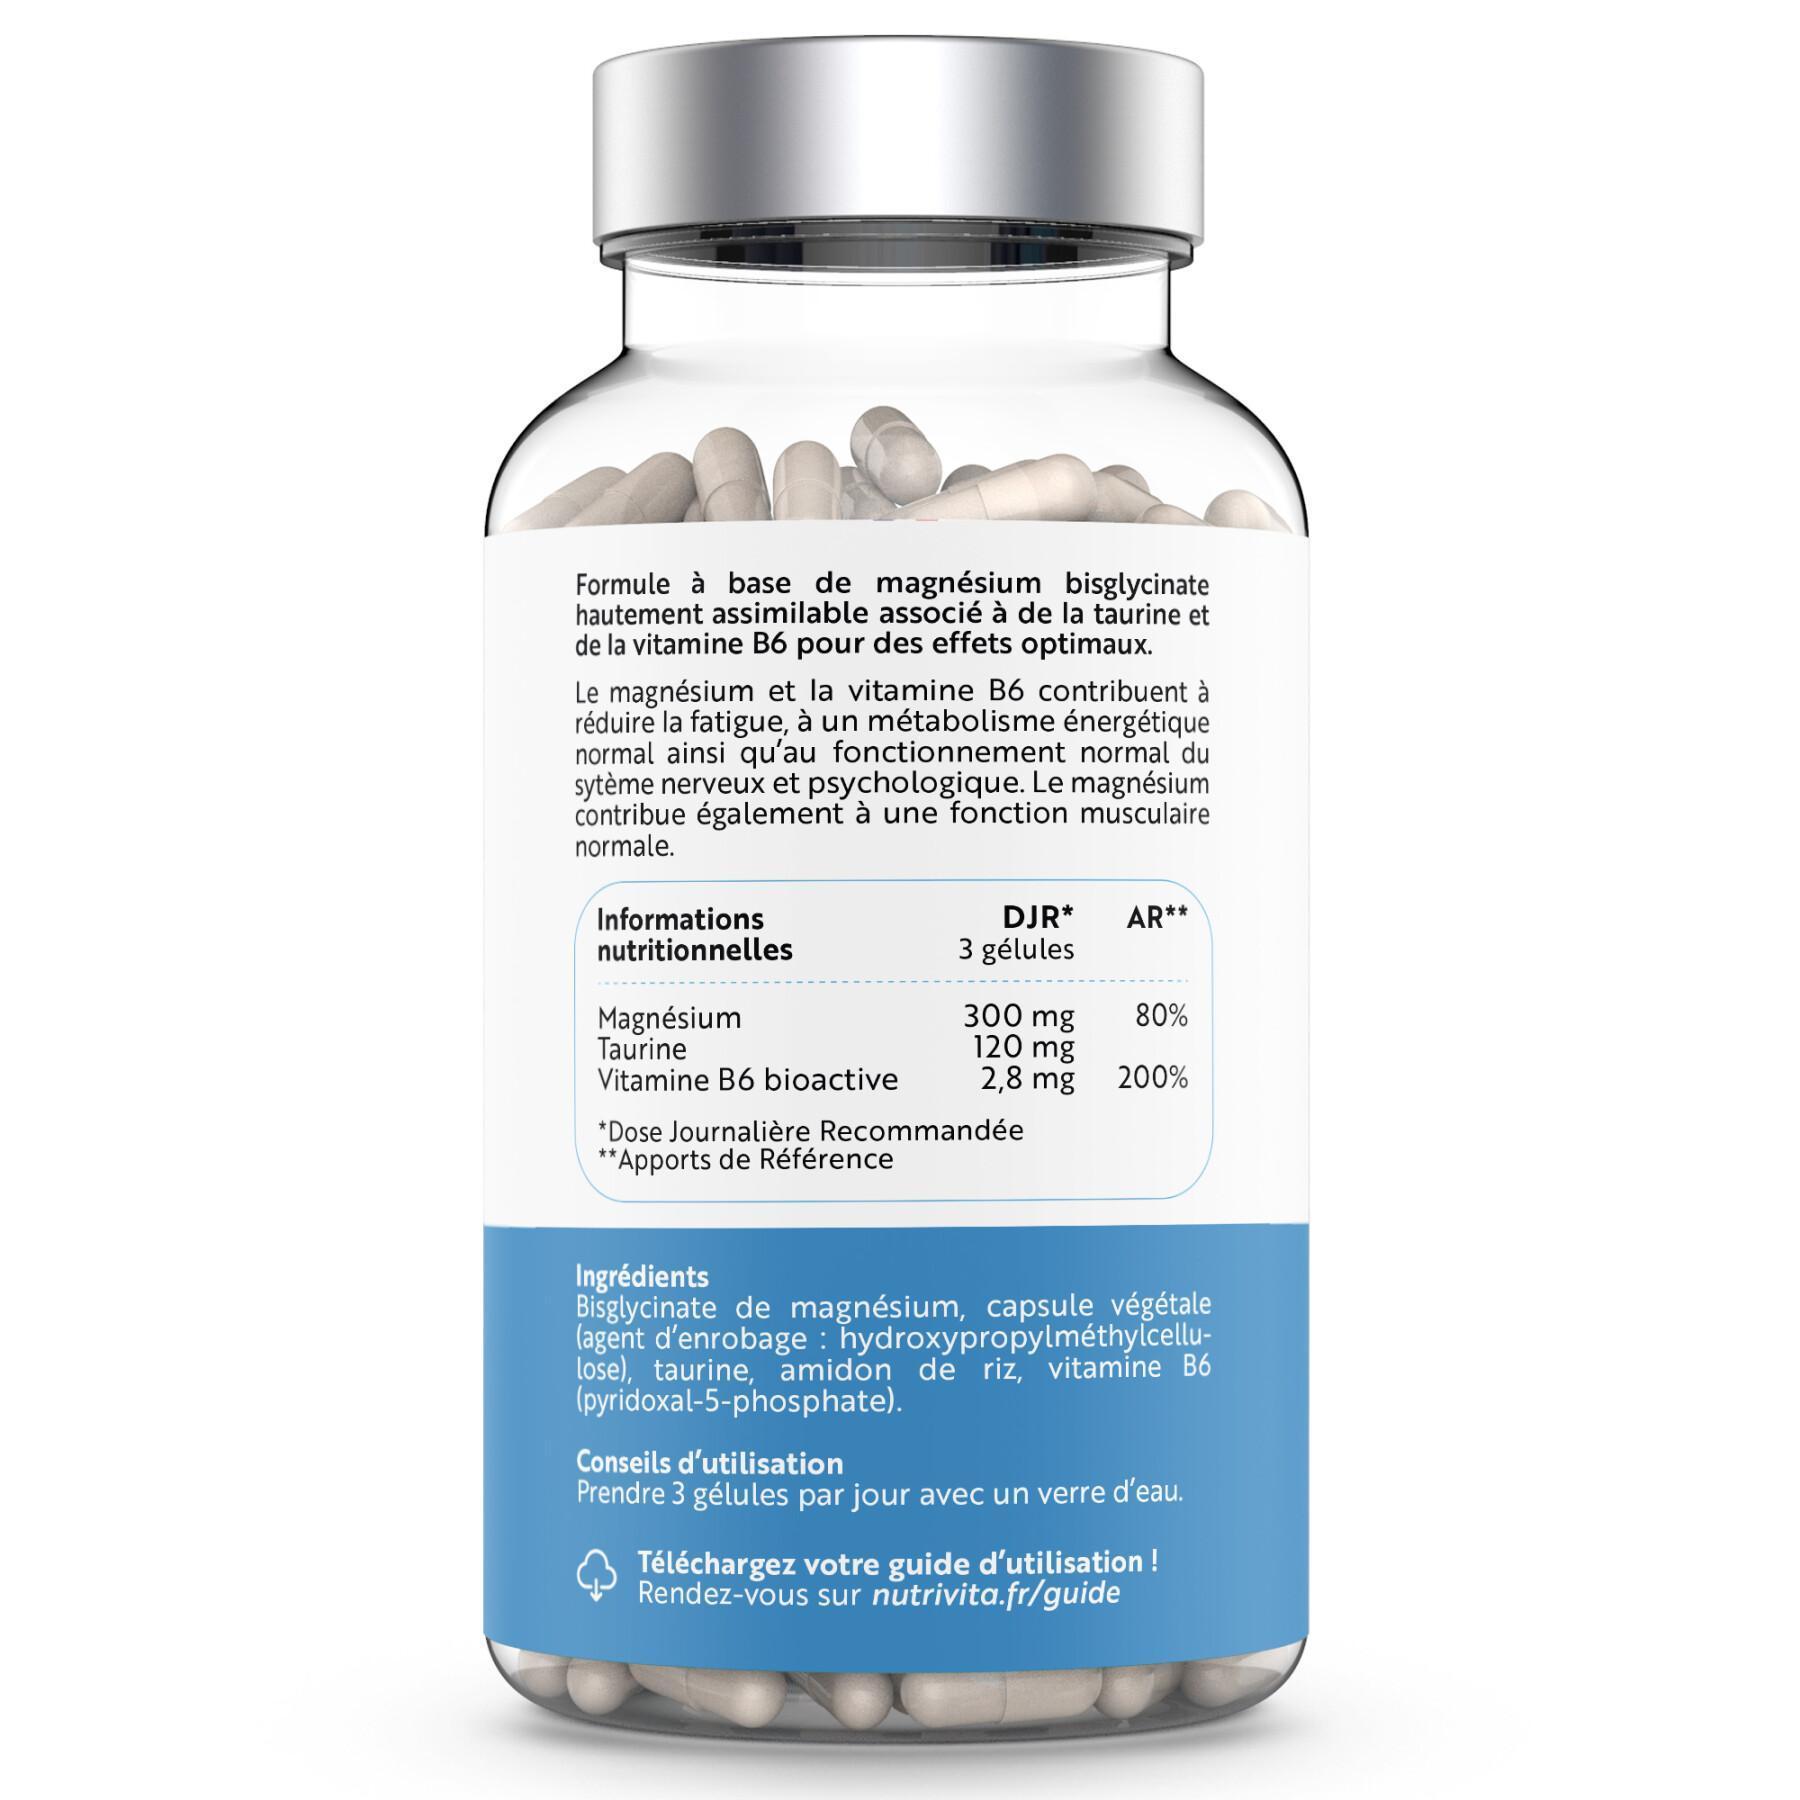 Nahrungsergänzungsmittel Magnesiumbisglycinat - 120 Kapseln Nutrivita